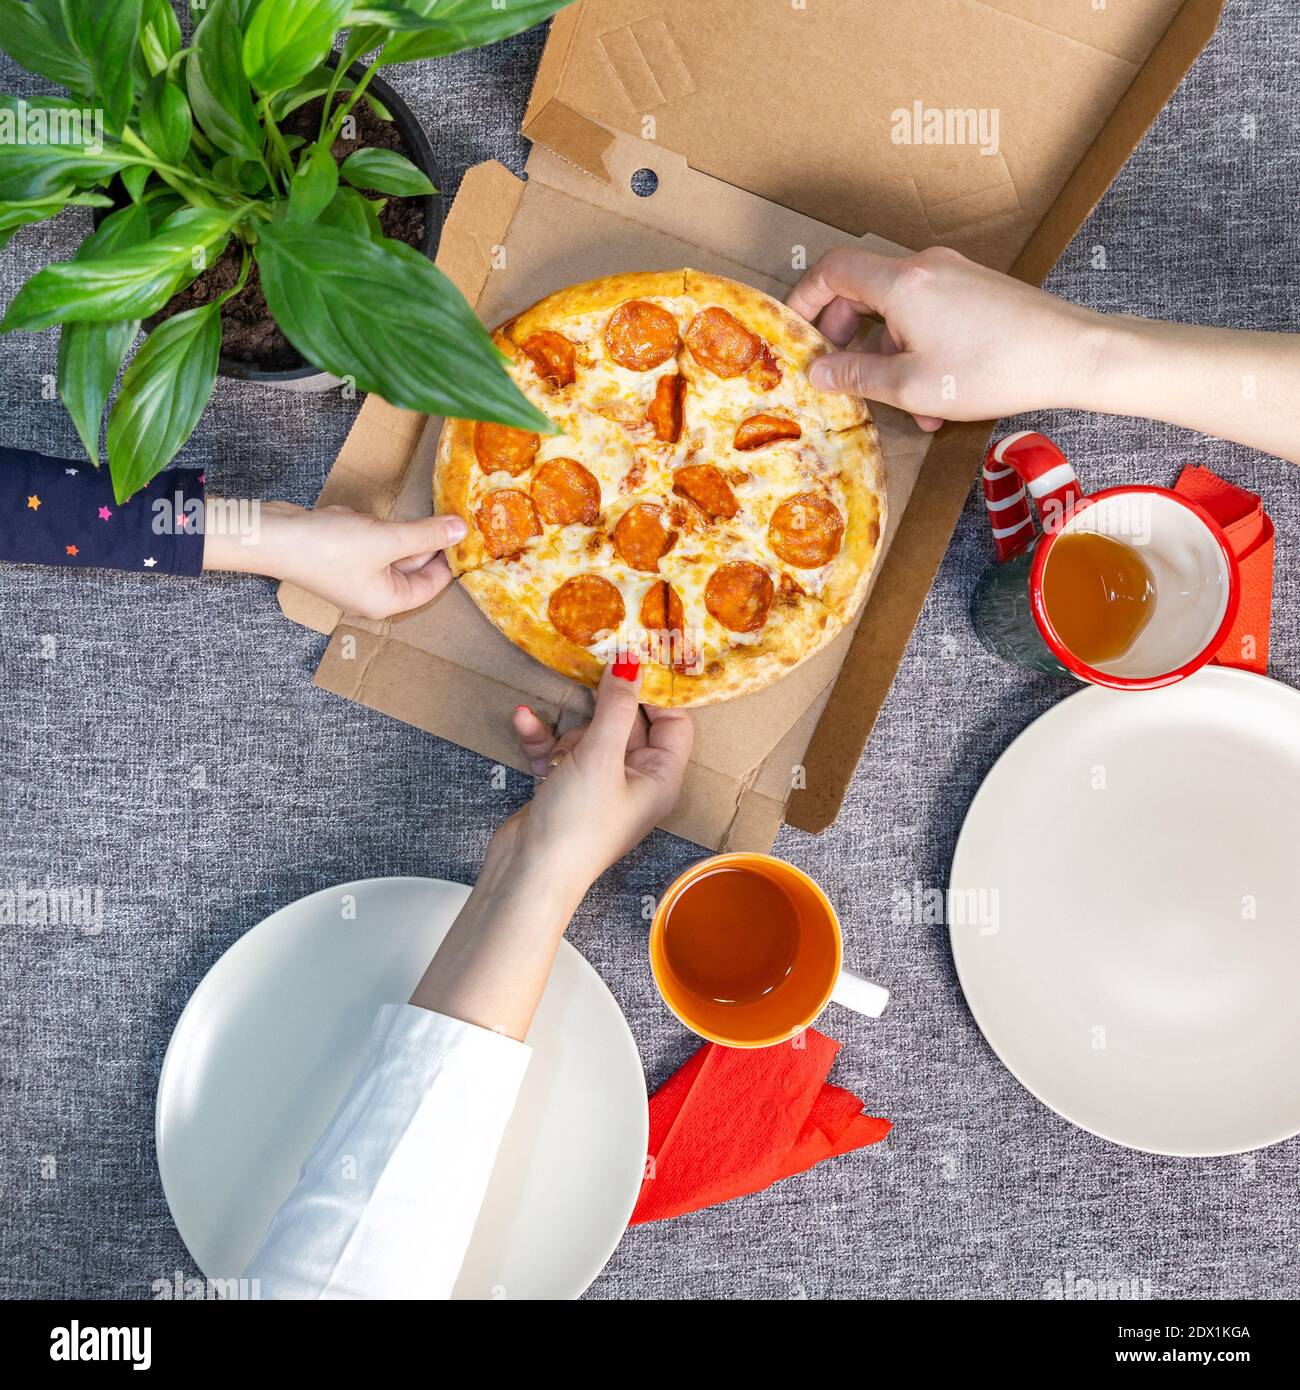 Petite pizza poivrée dans une boîte sur une table, vue de dessus, déjeuner en famille. Banque D'Images